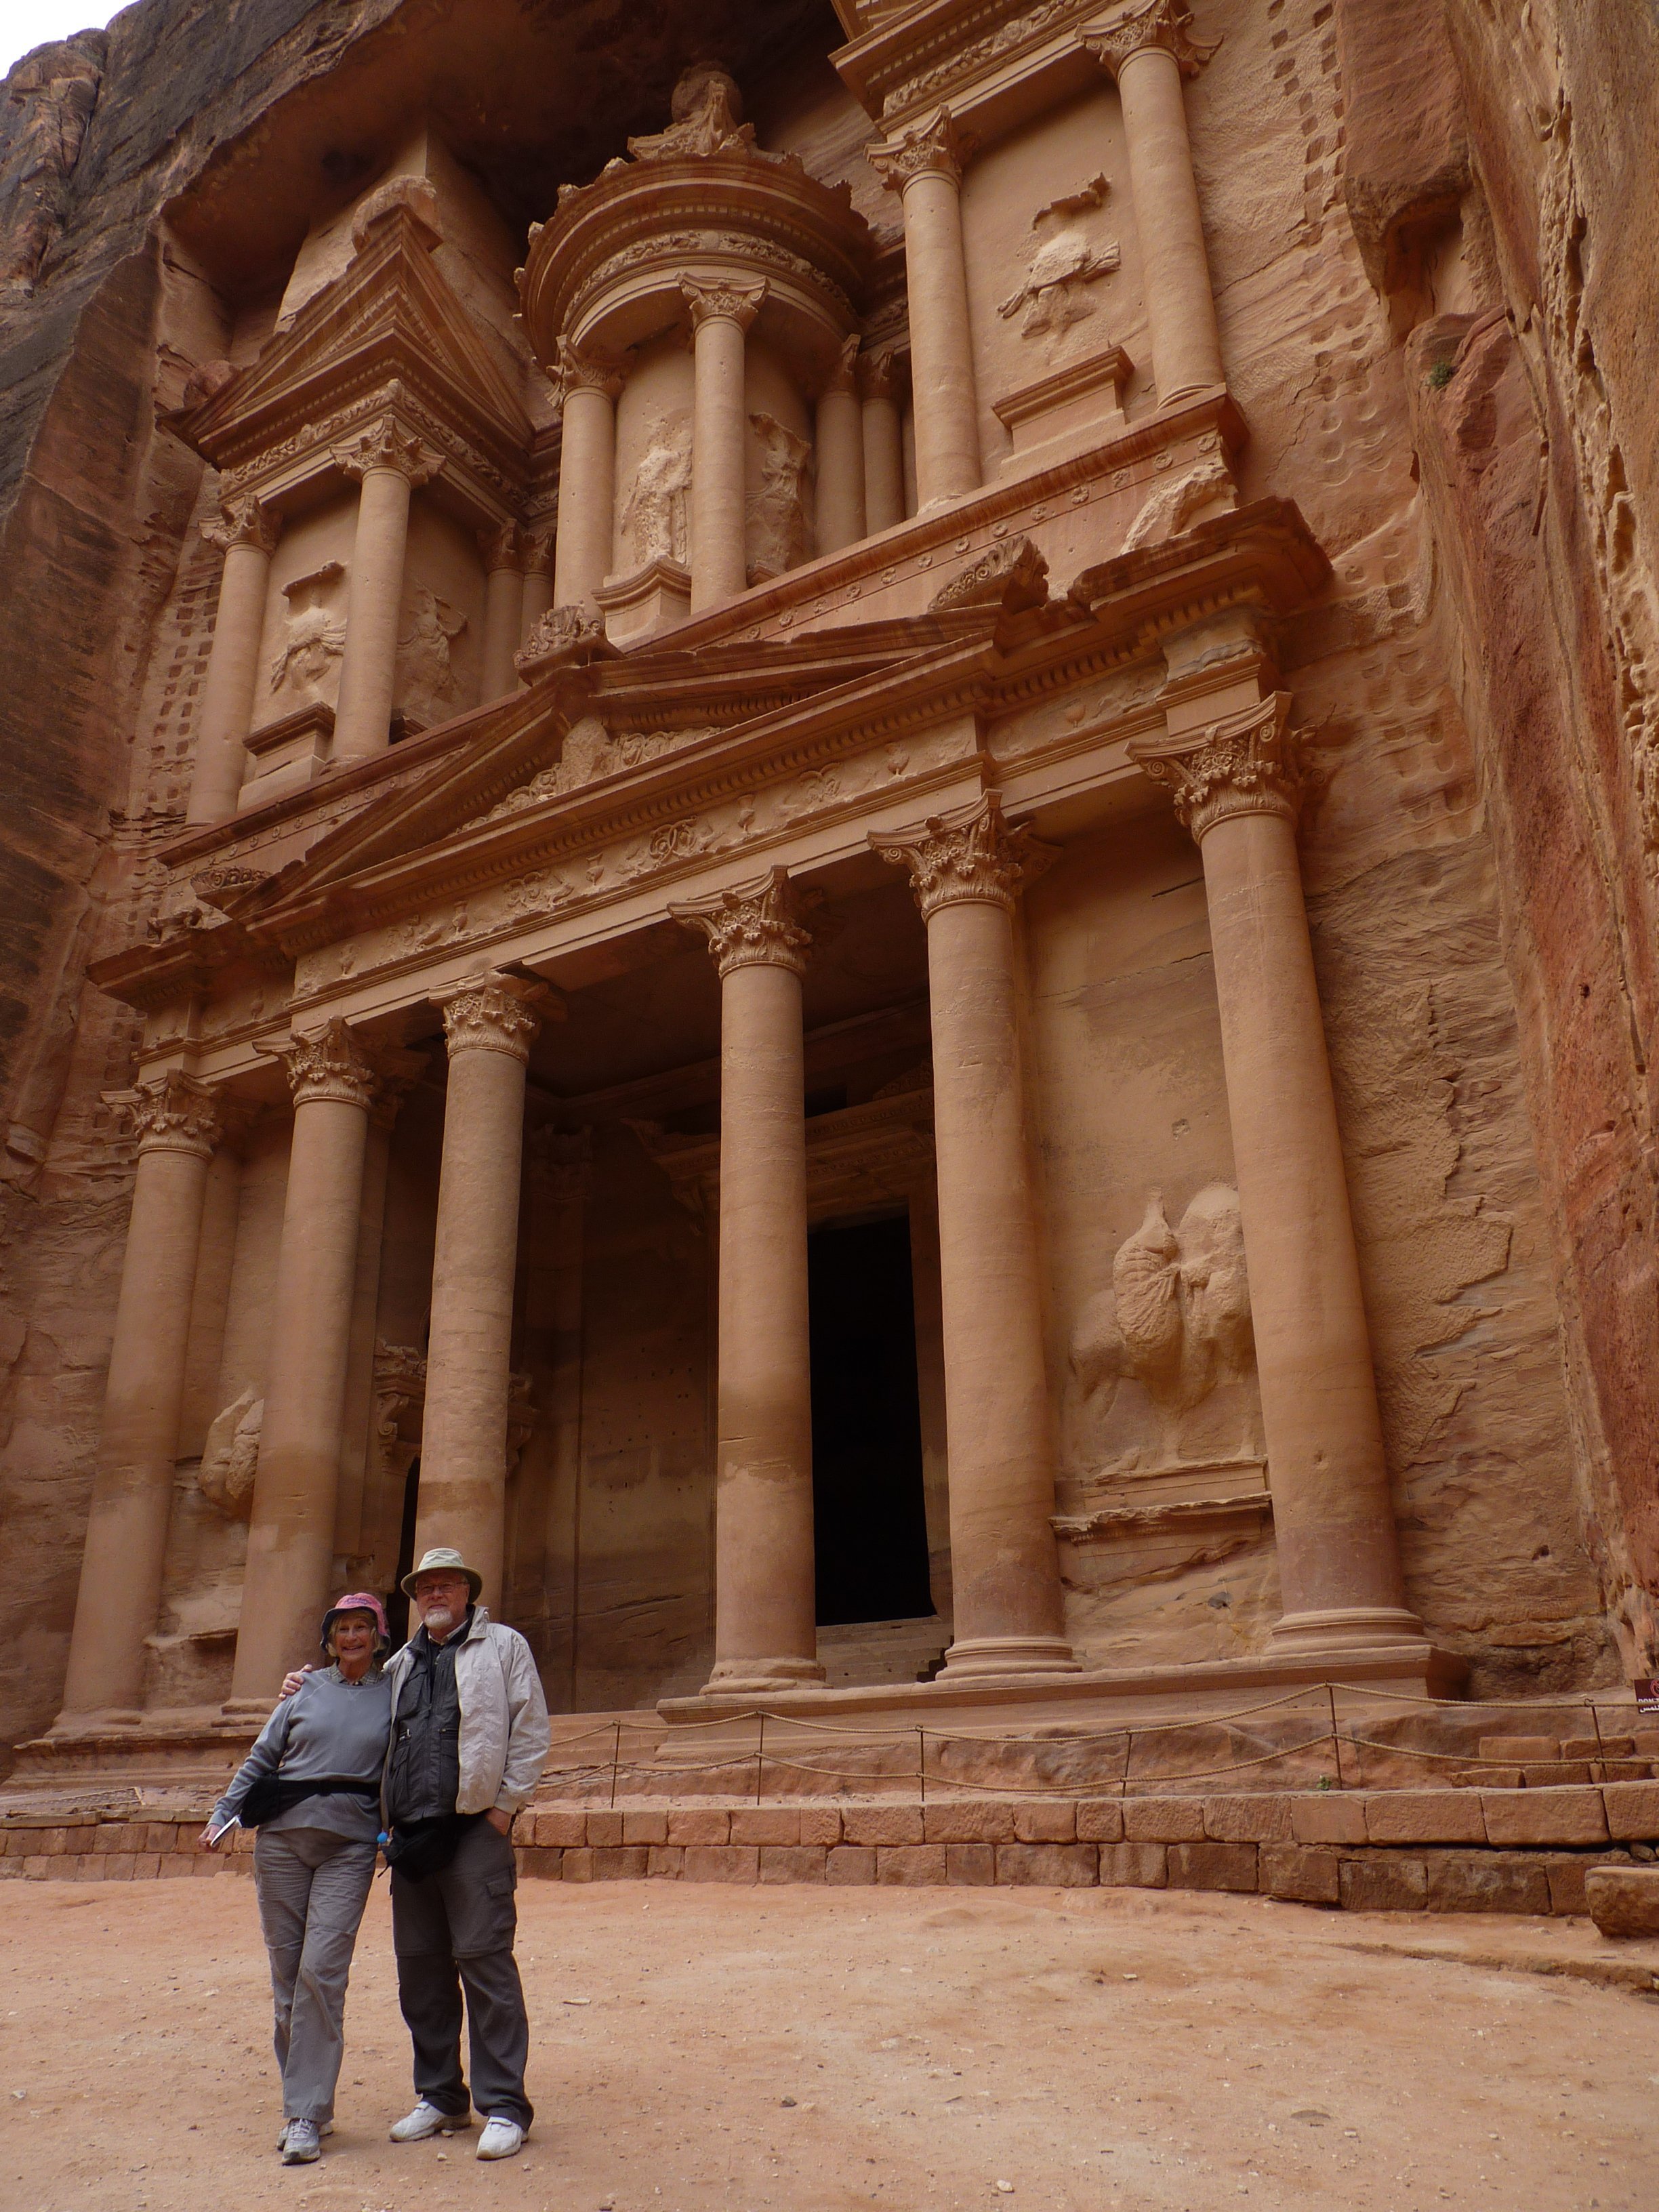 Dale and Diane at Petra, Jordan 2